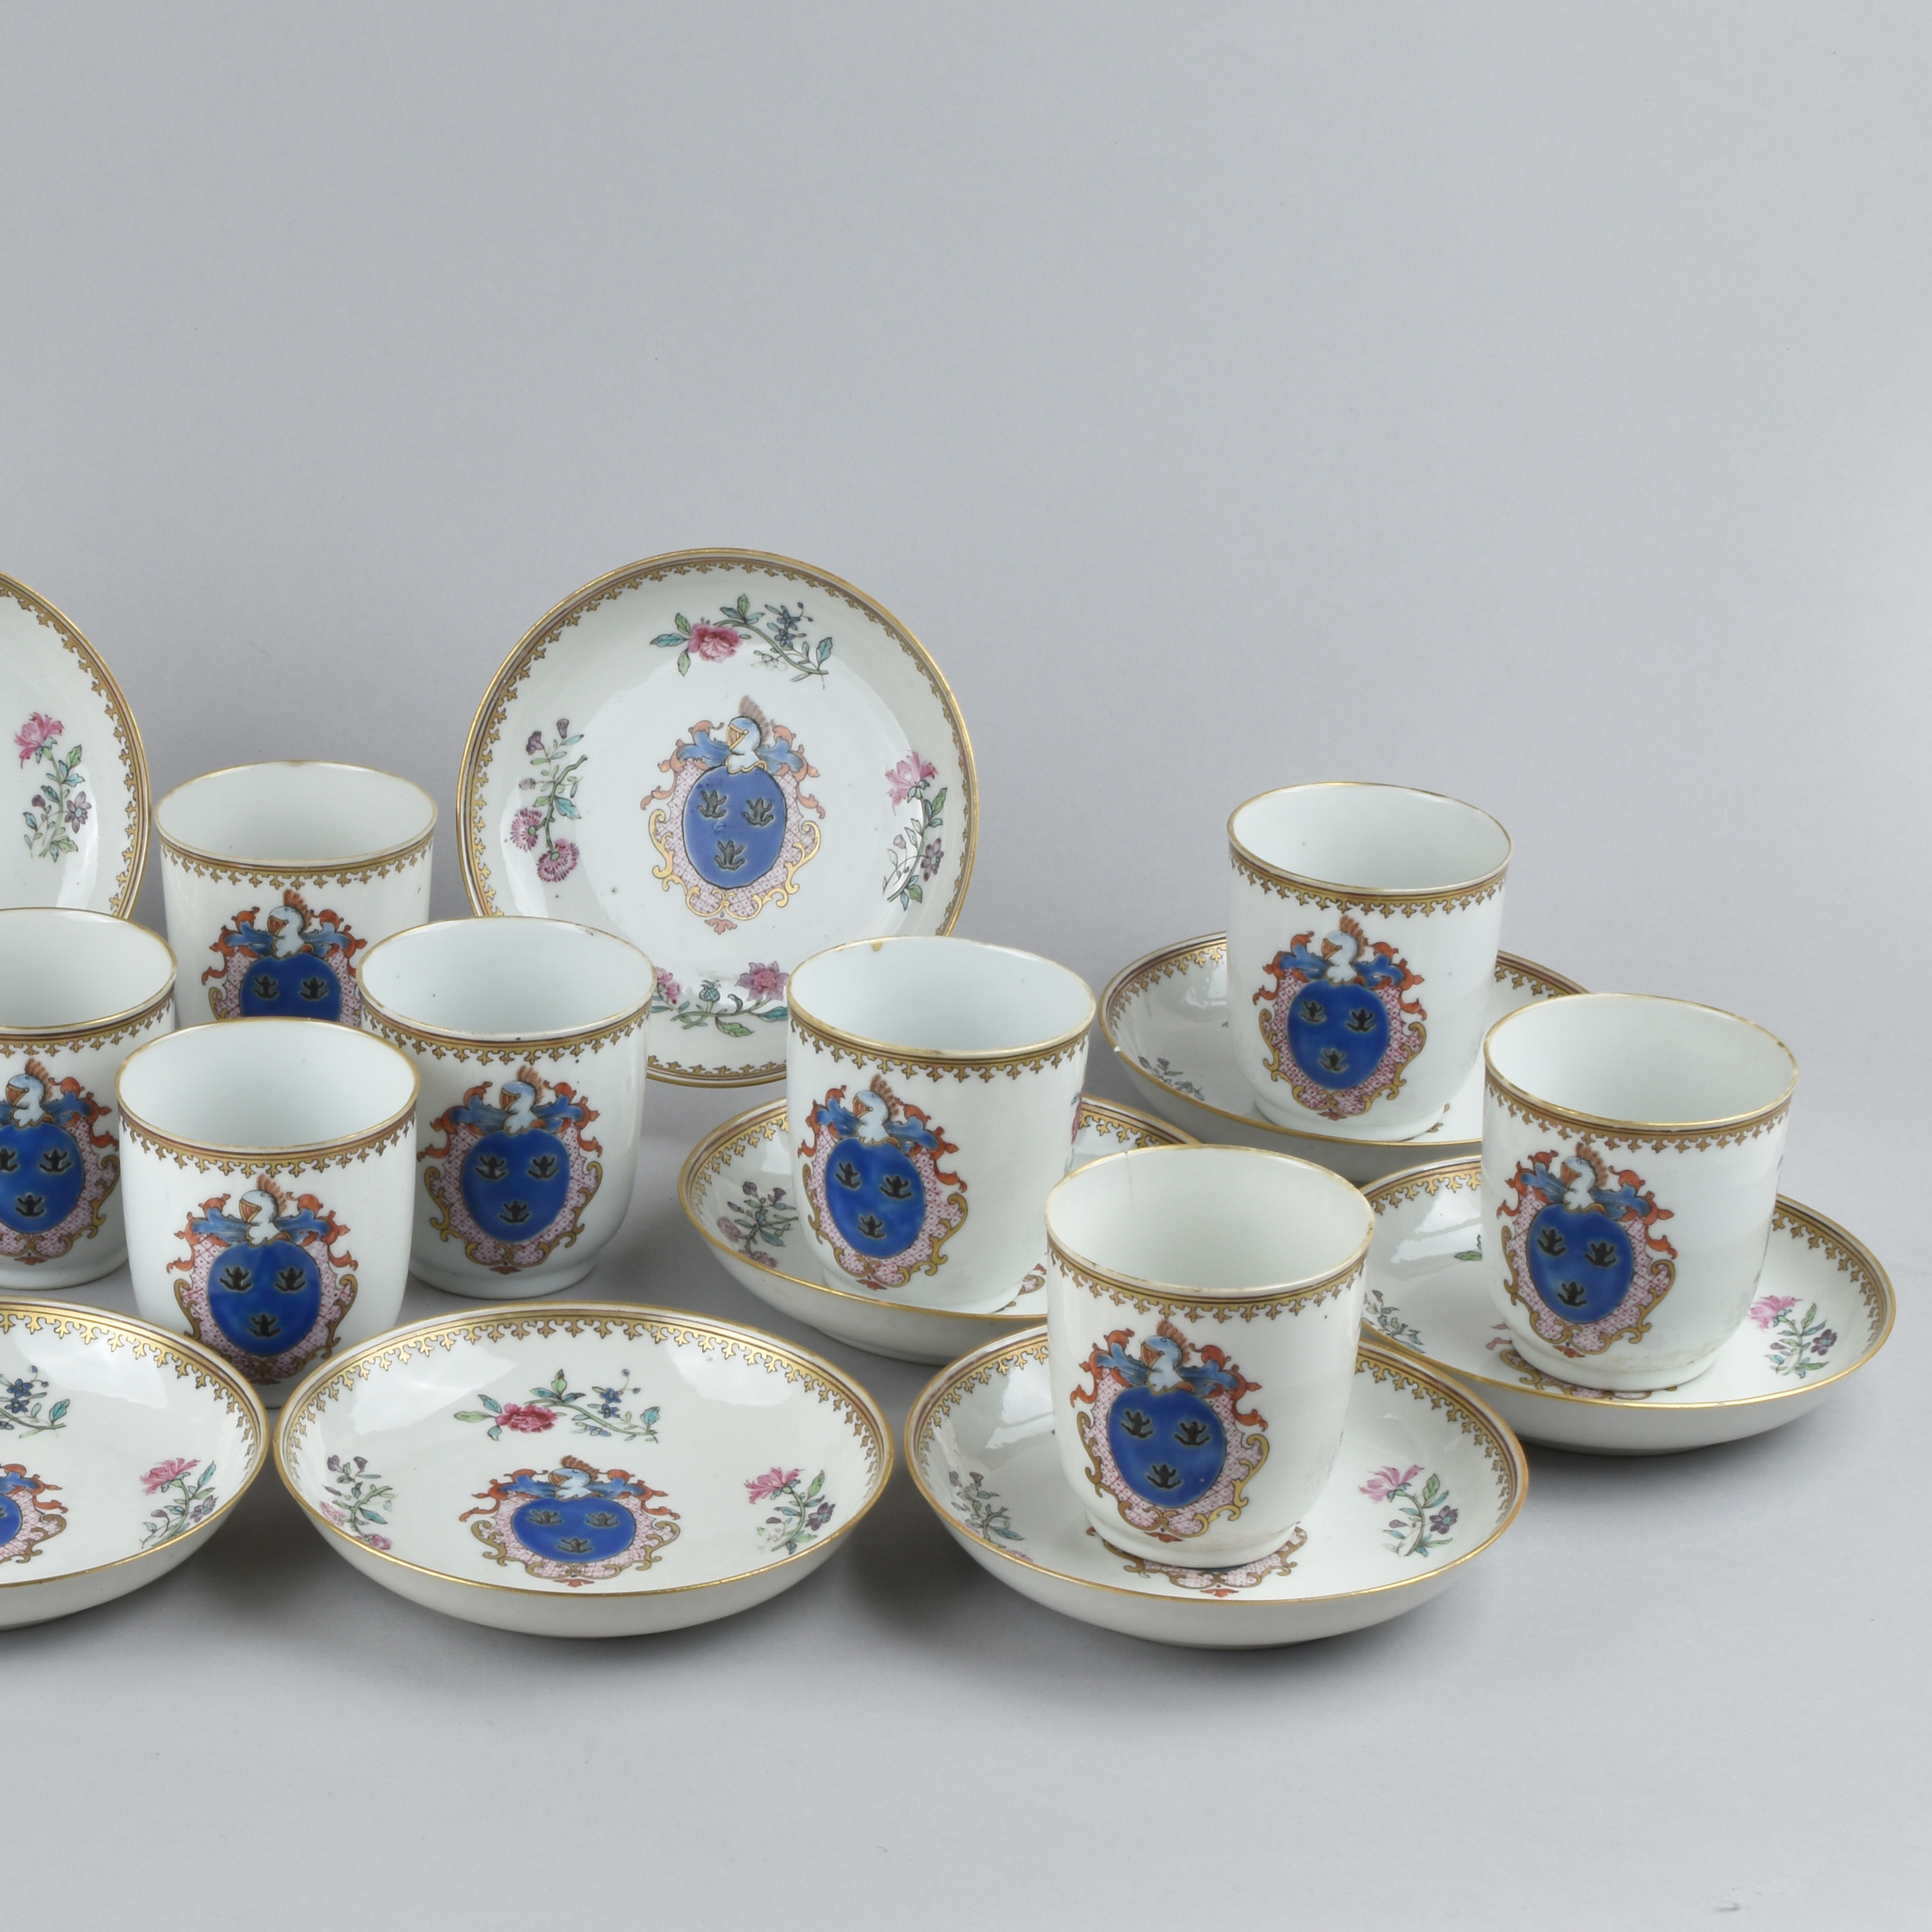 Porcelaine Qianlong (1735-1795), ca. 1755, China